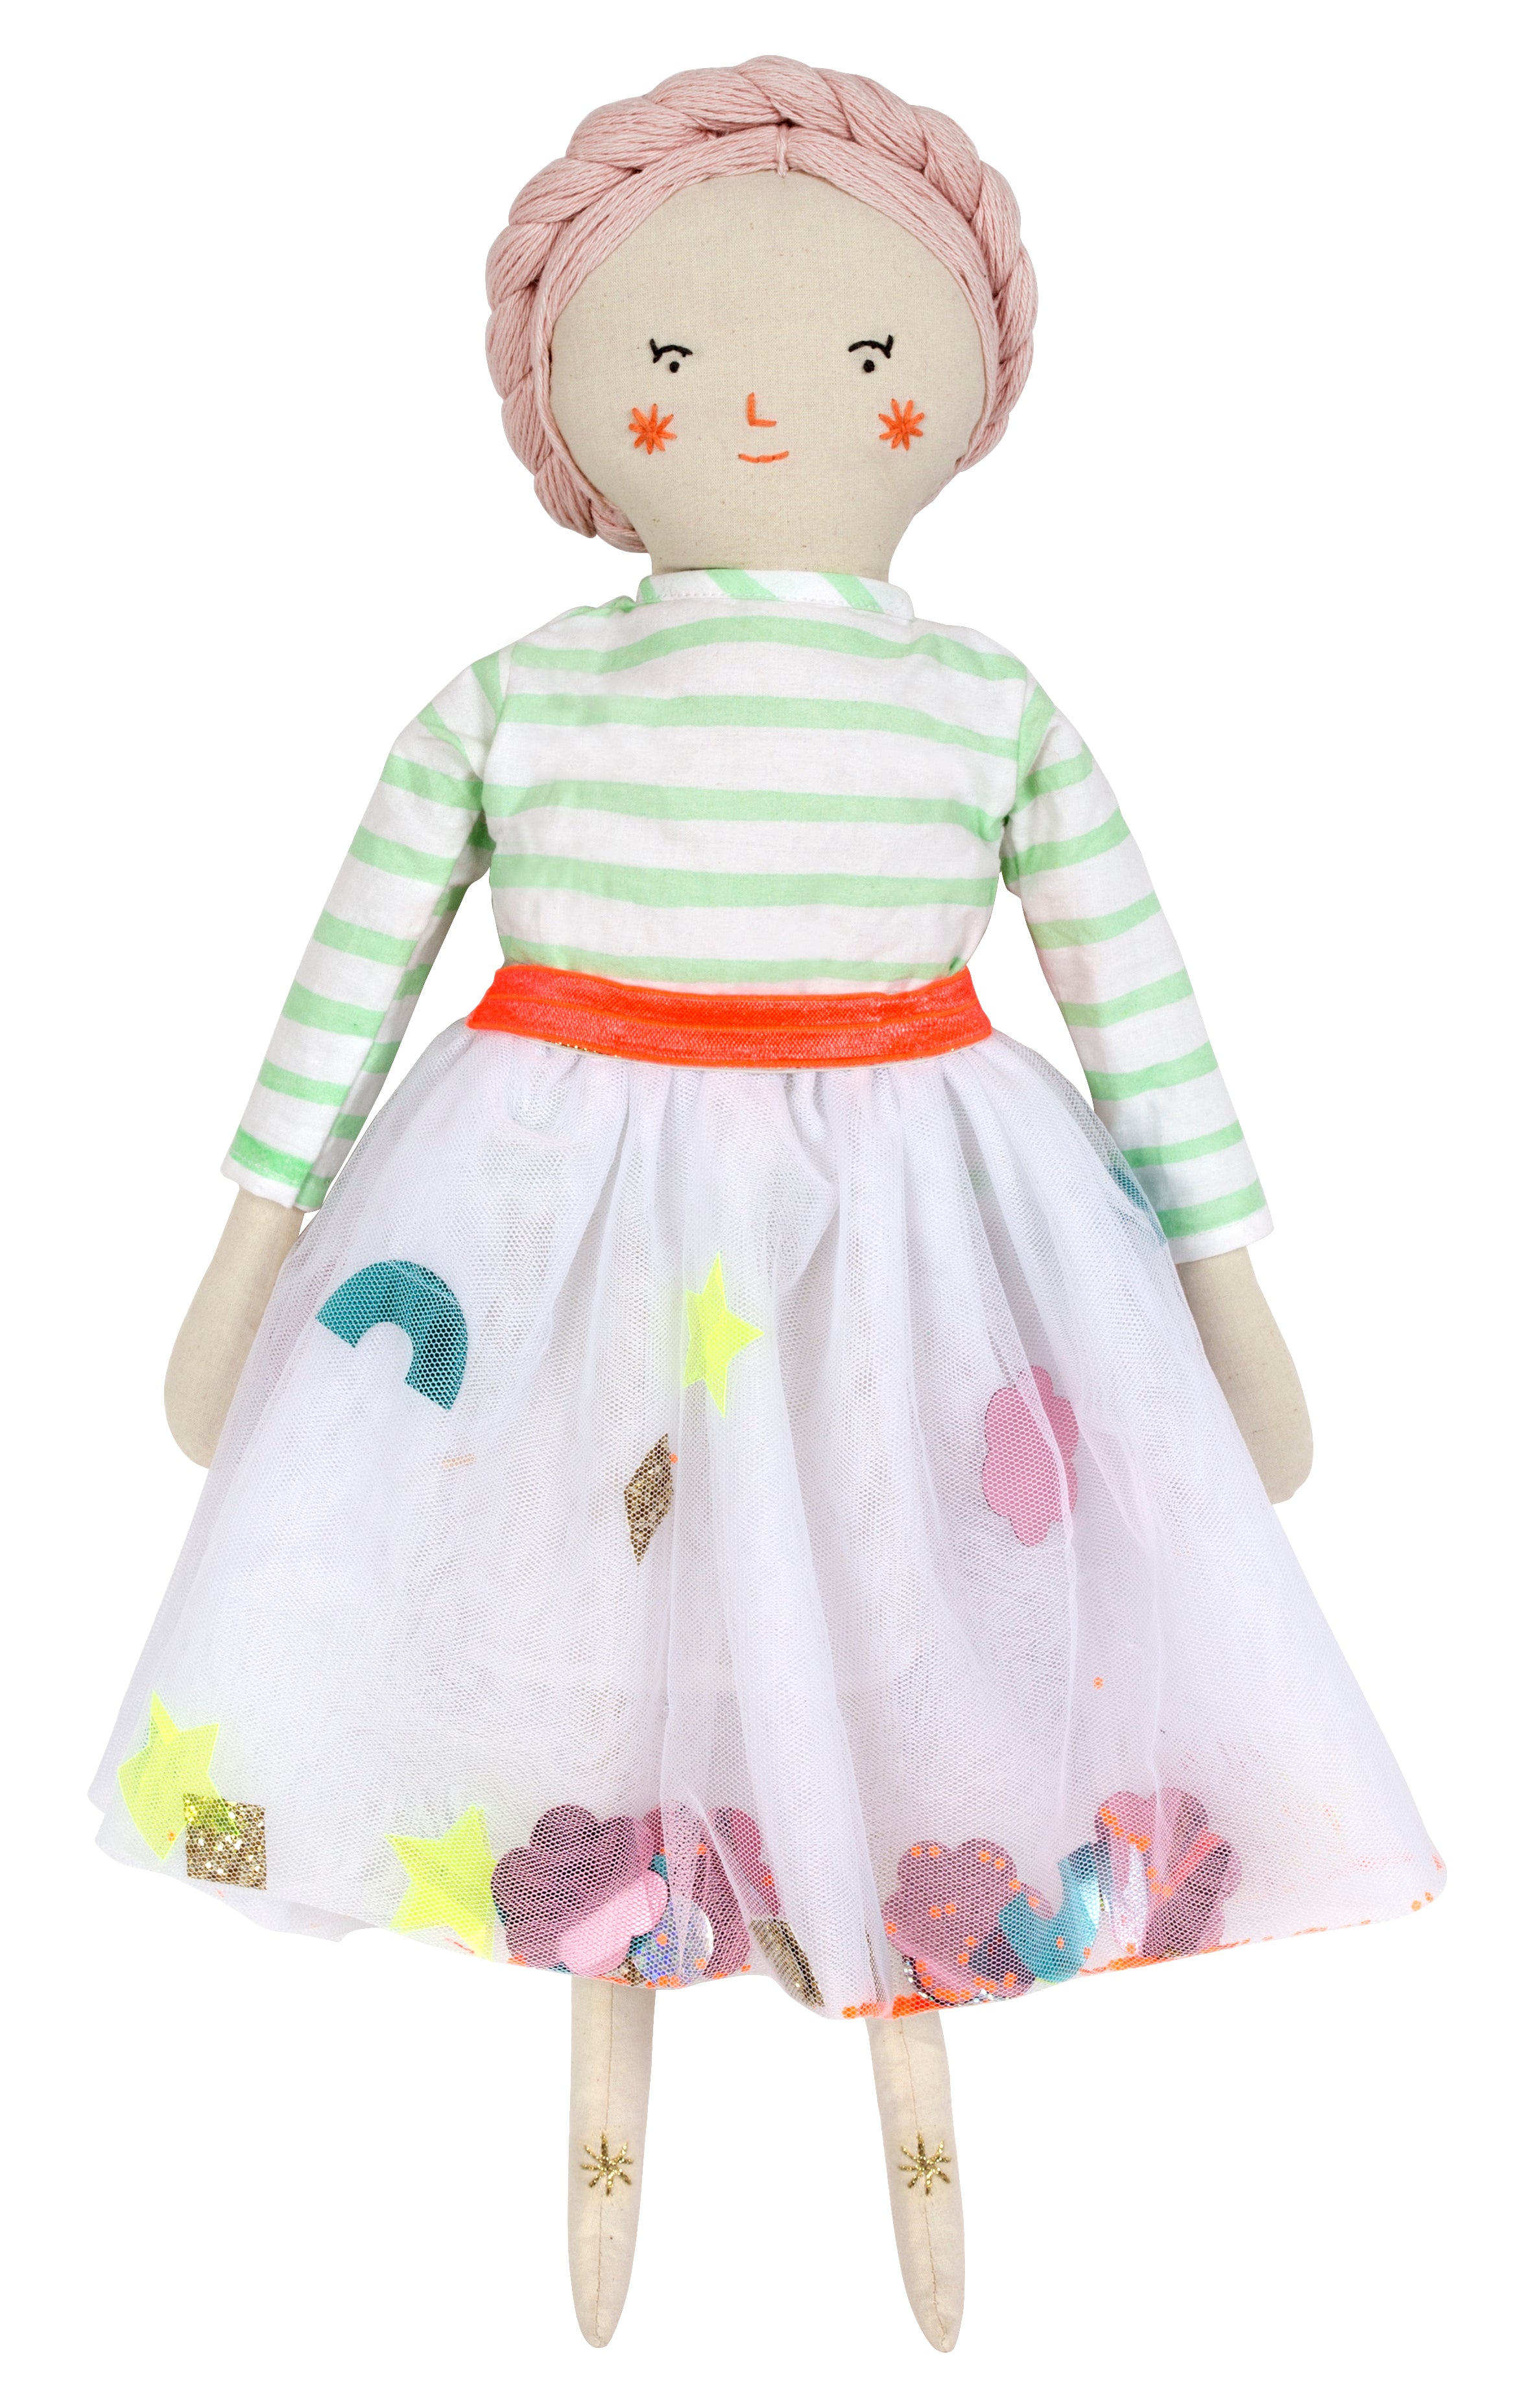 Matilda Fabric Toy Doll